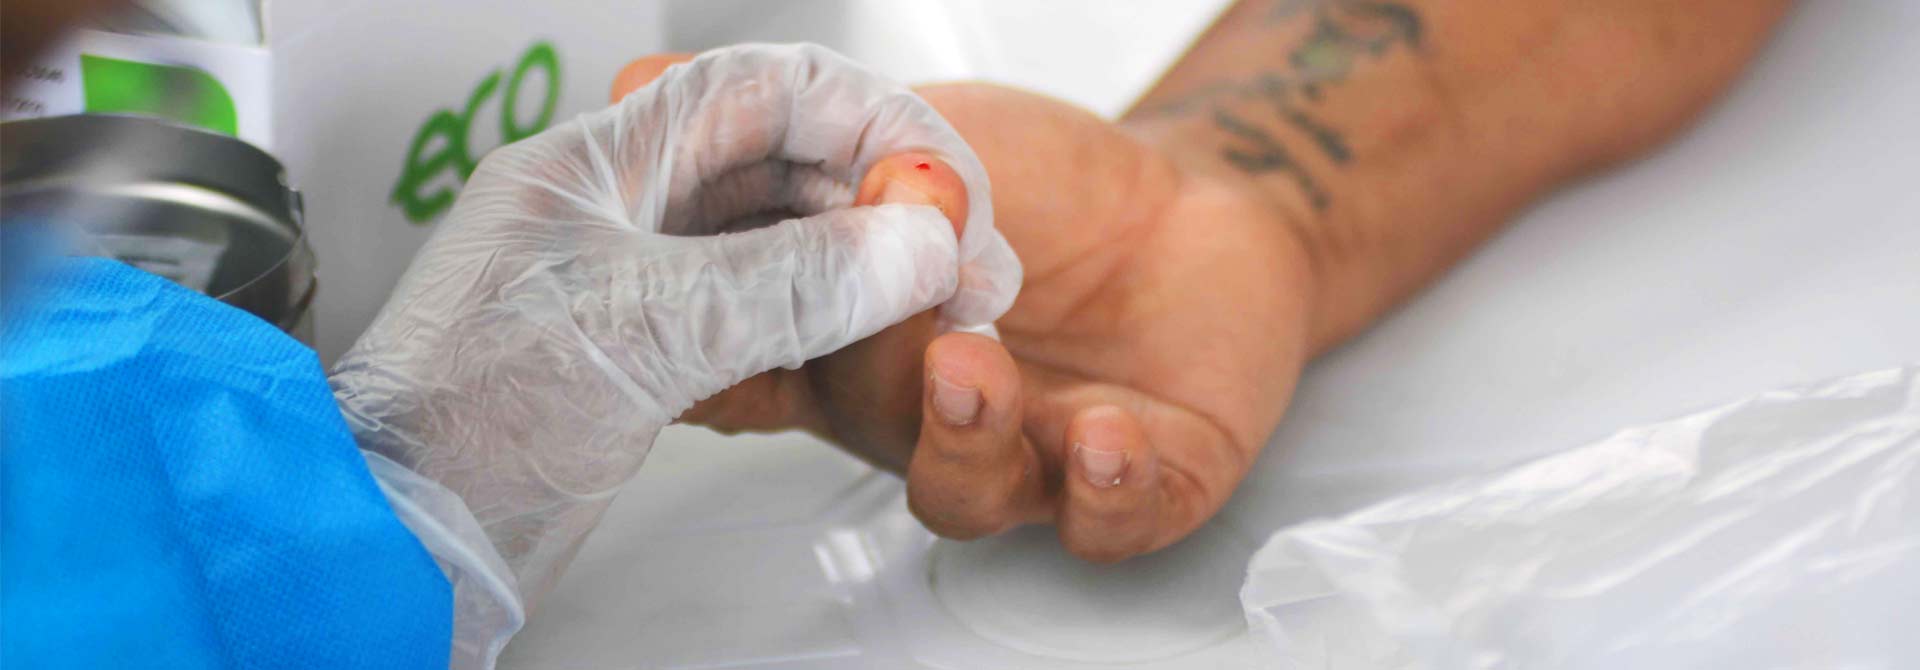 foto mostra mão de profissional de saúde, com luvas, coletando amostra de sangue do dedo de um paciente